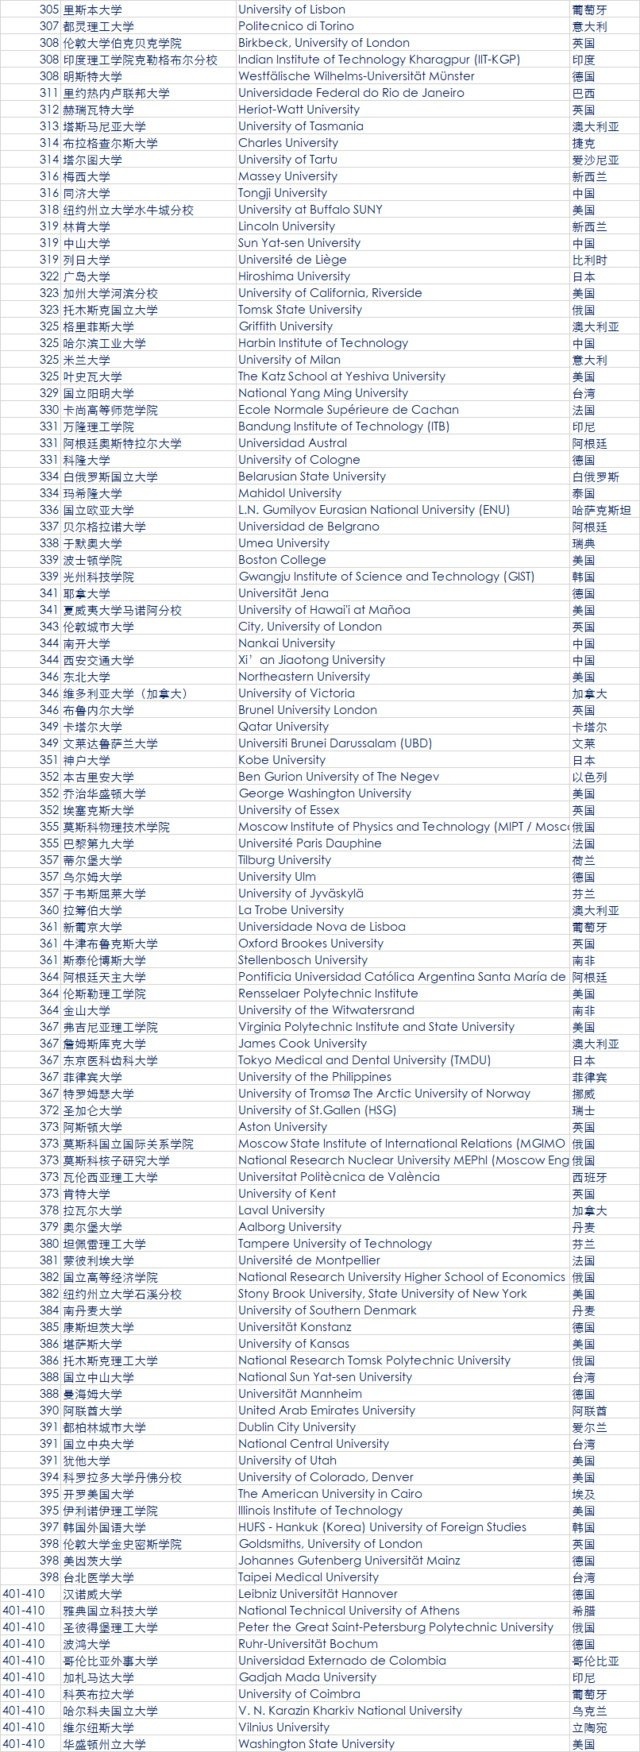 最新QS全球大学排名公布 中国大陆39所大学上榜4